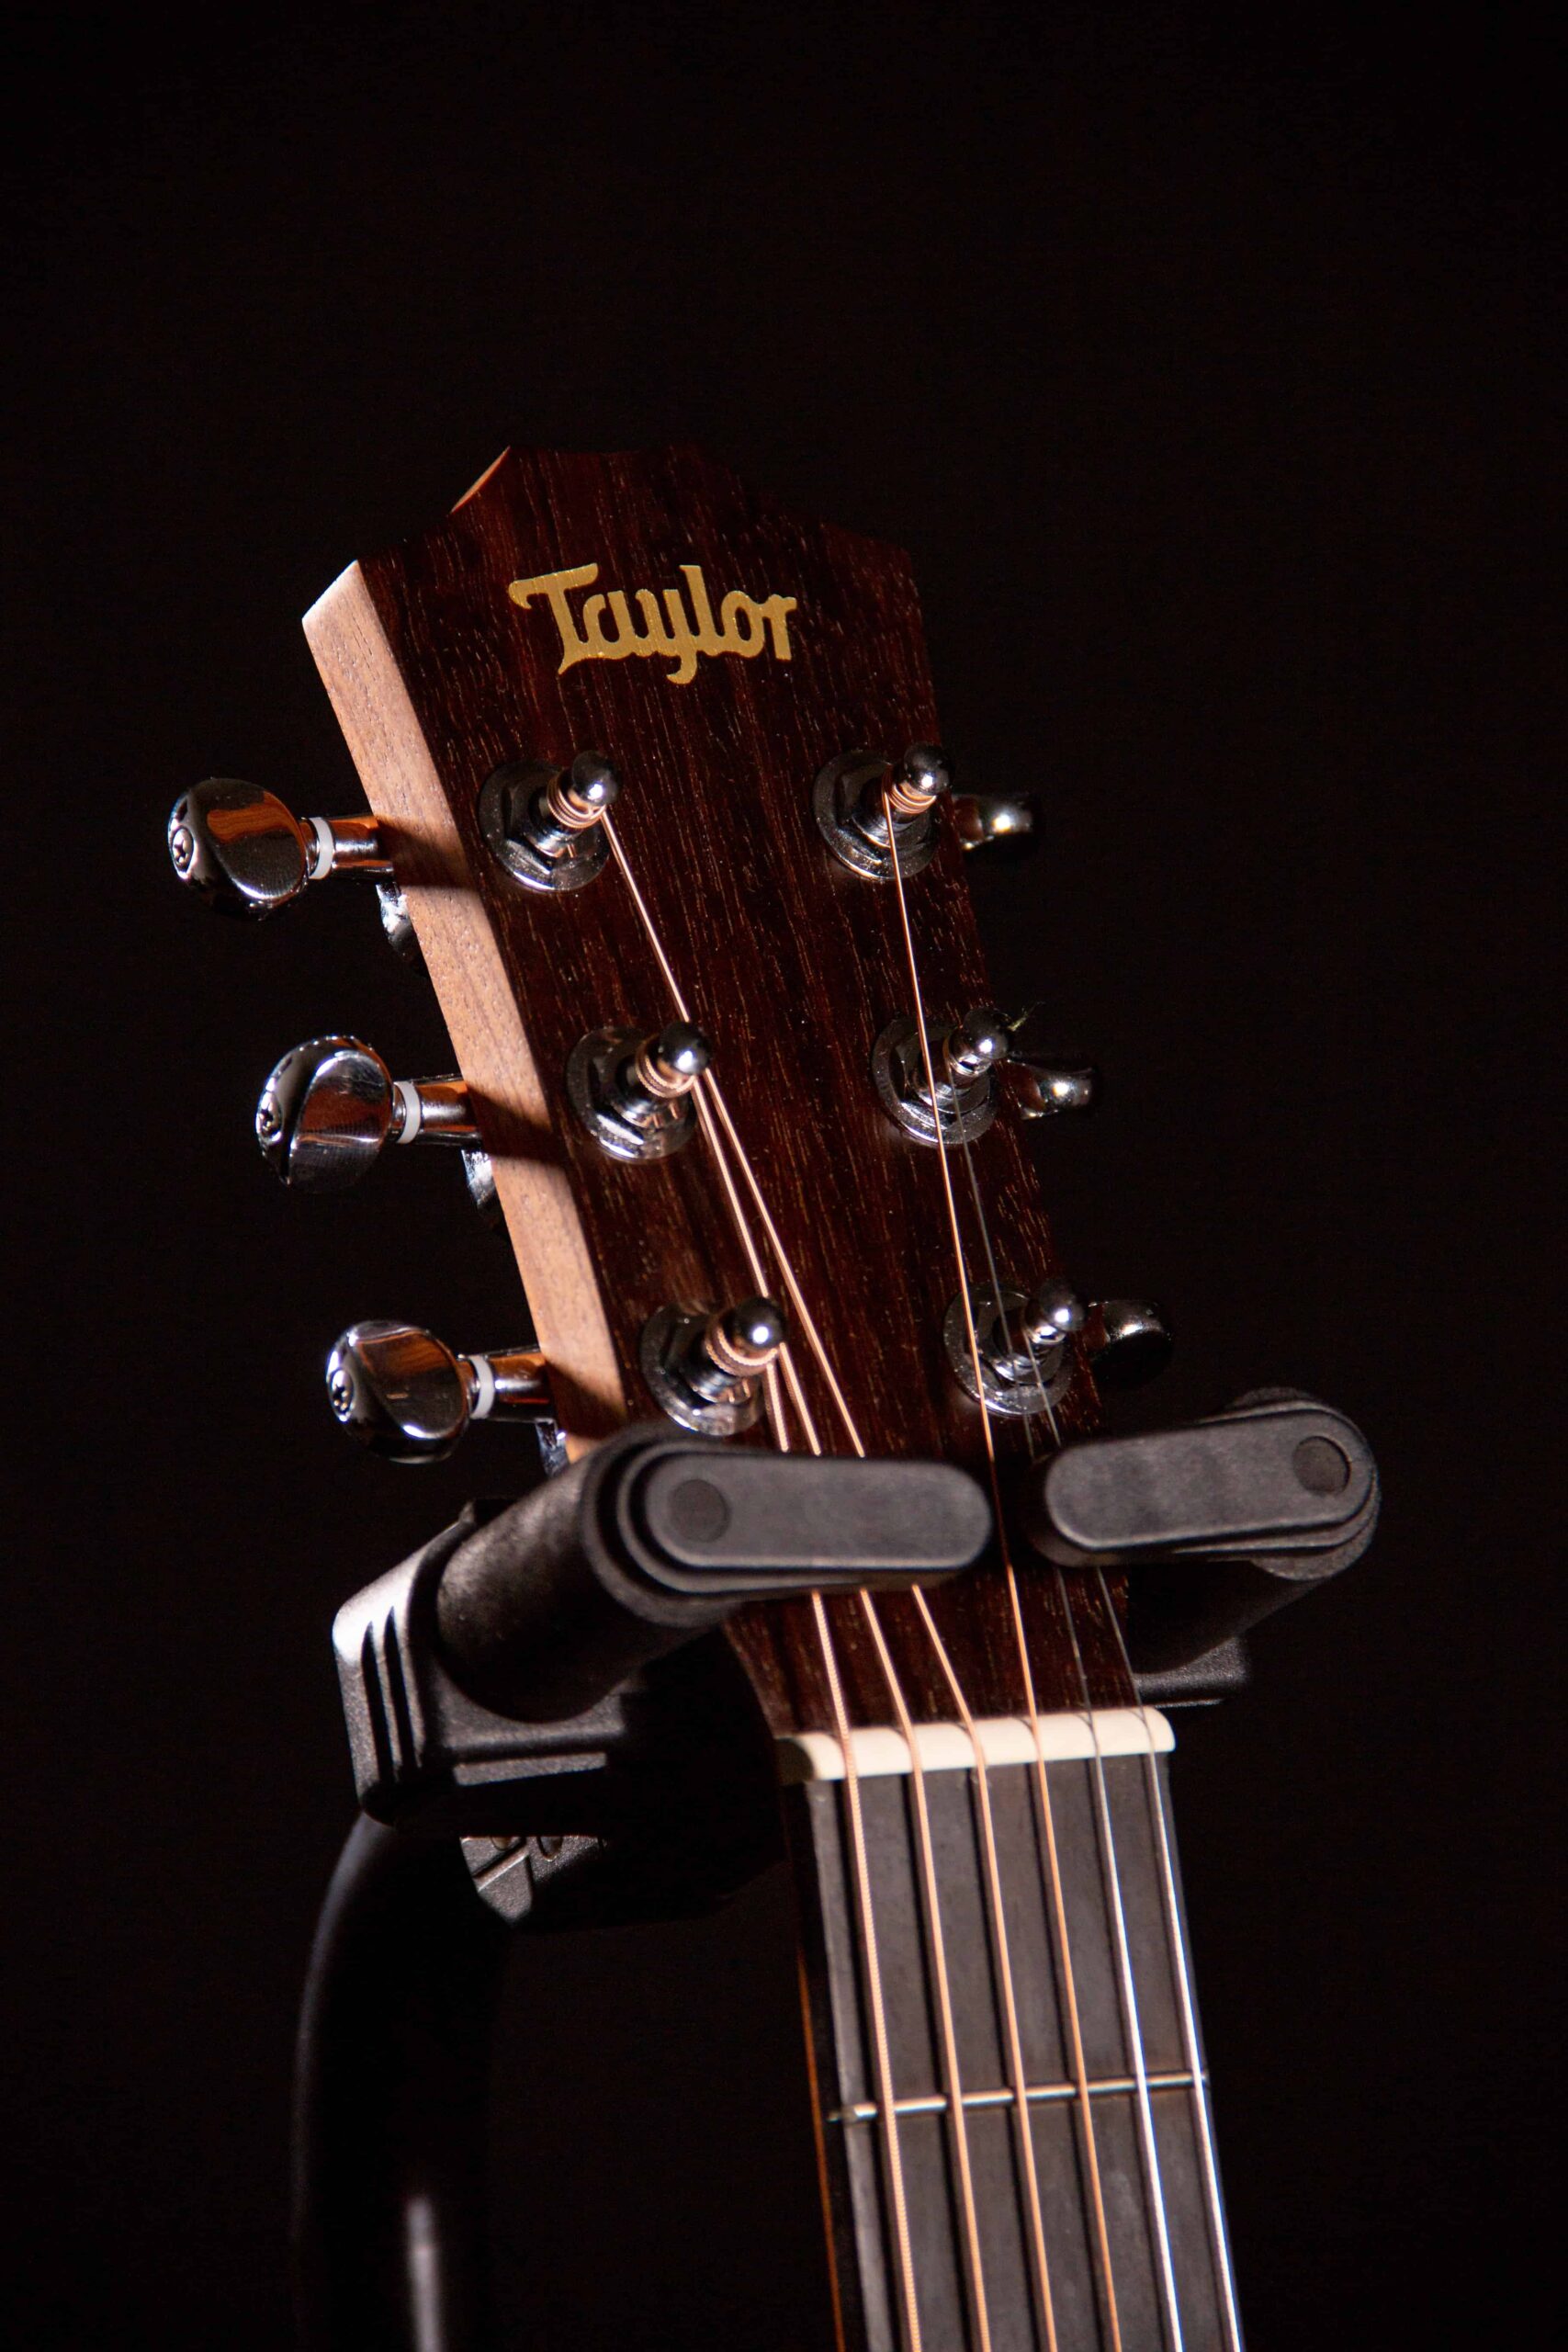 Una fotografía de primer plano del clavijero de una guitarra Taylor